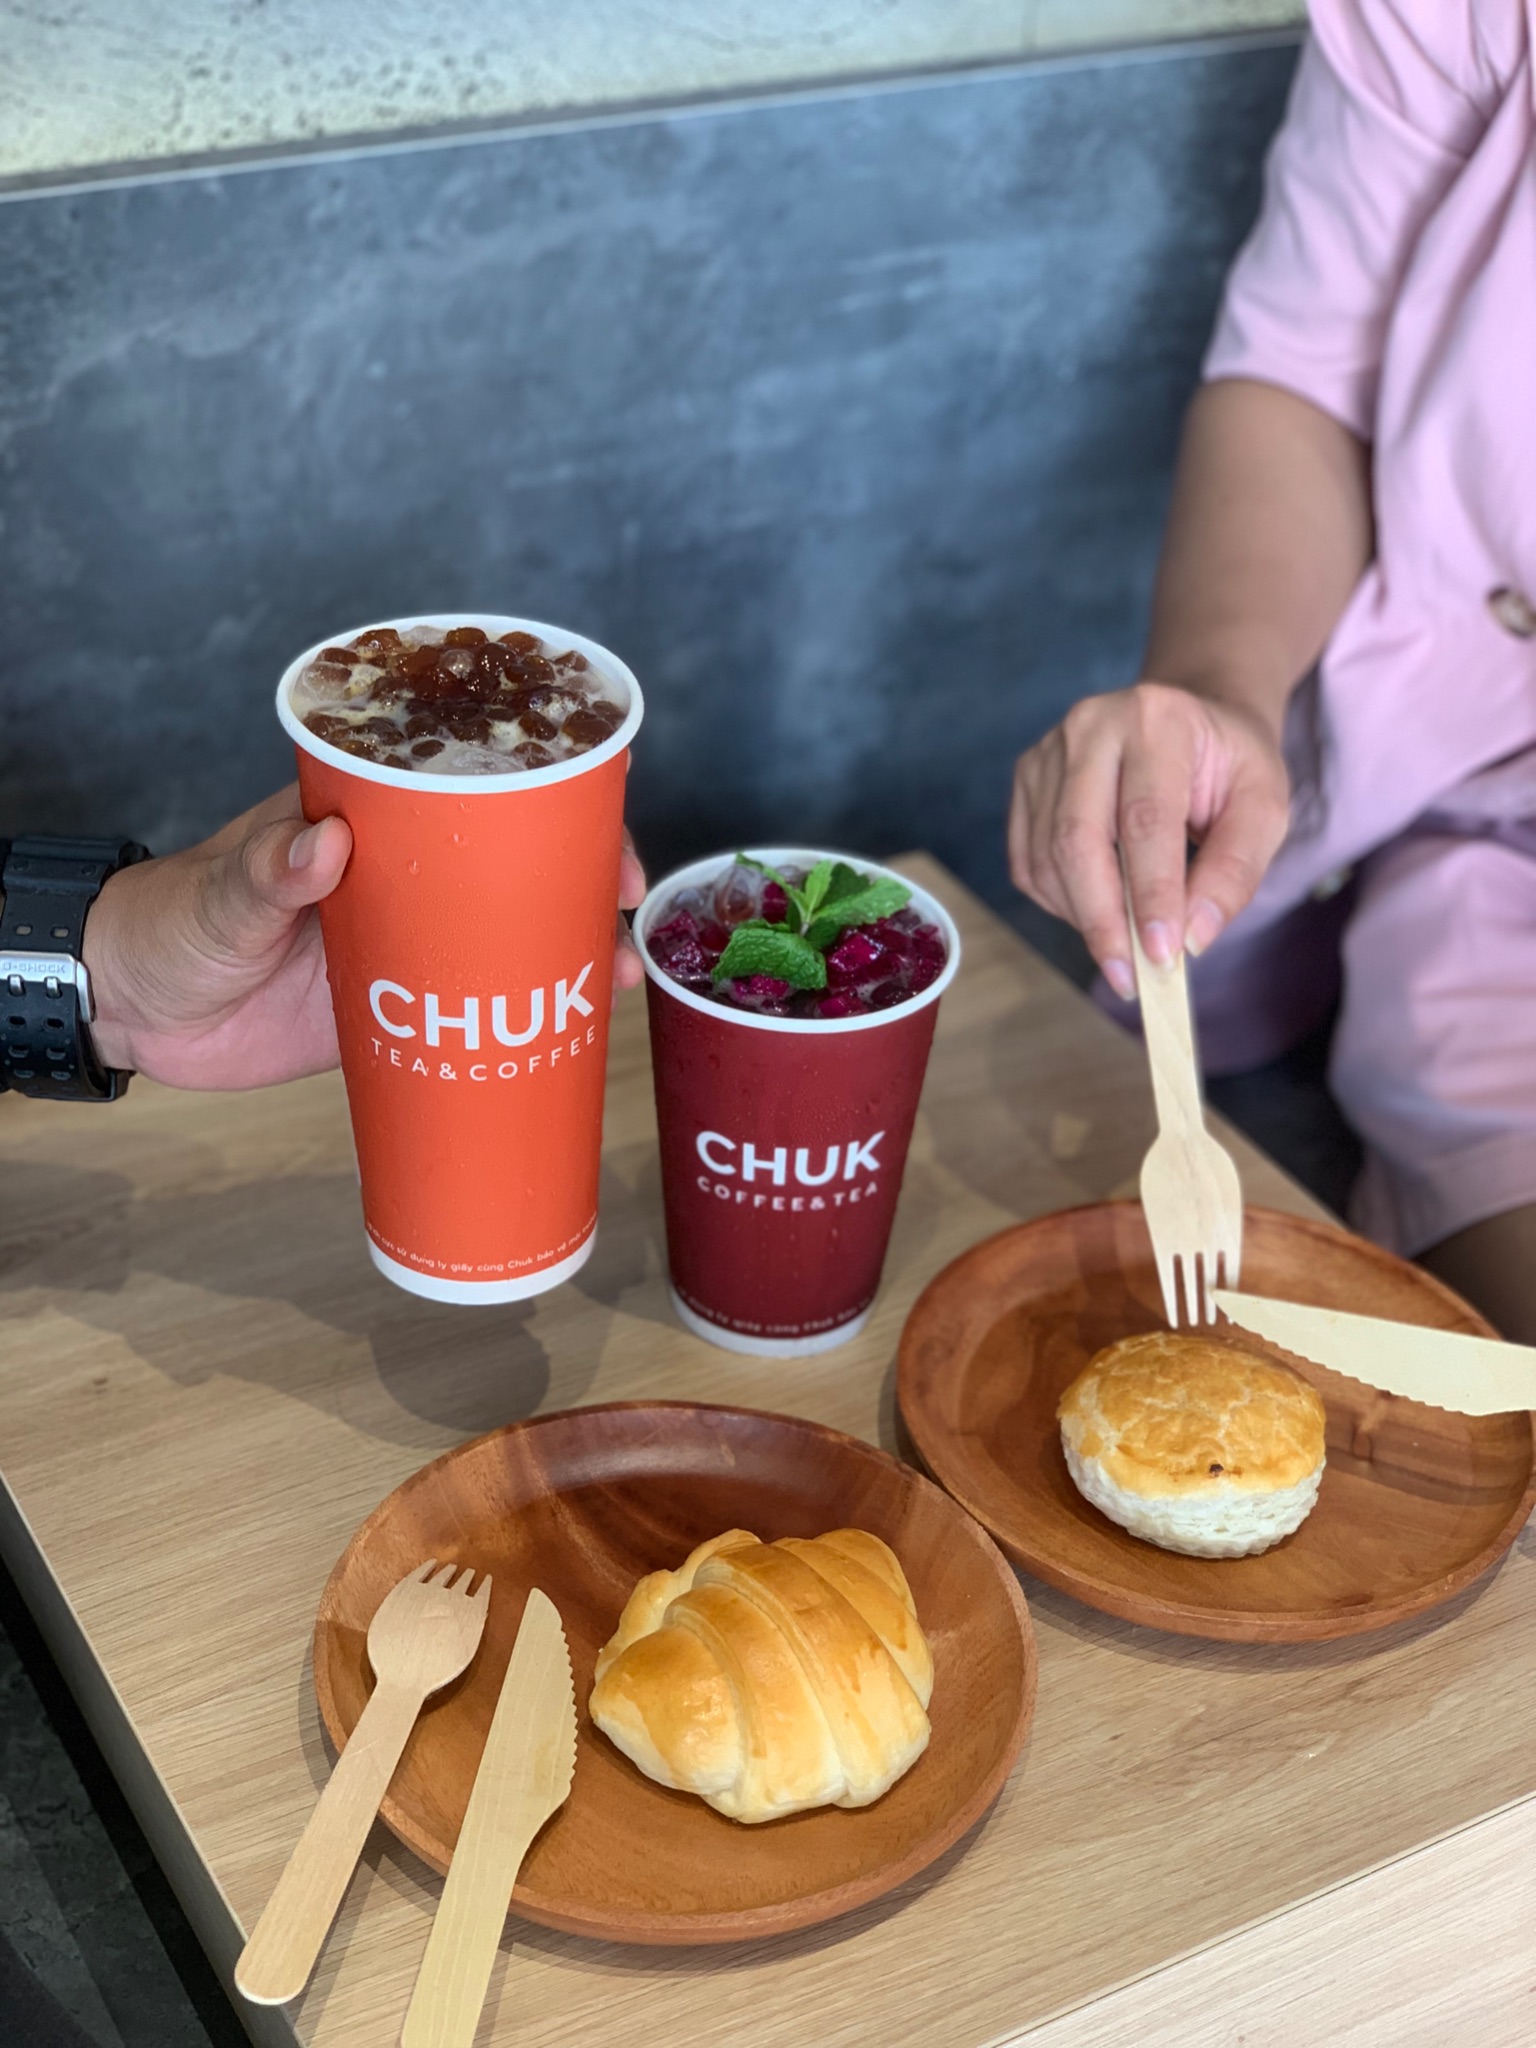 Chuk Tea & Coffee chính thức chào sân tại 2 thành phố Bà Rịa và Vũng Tàu - Ảnh 4.